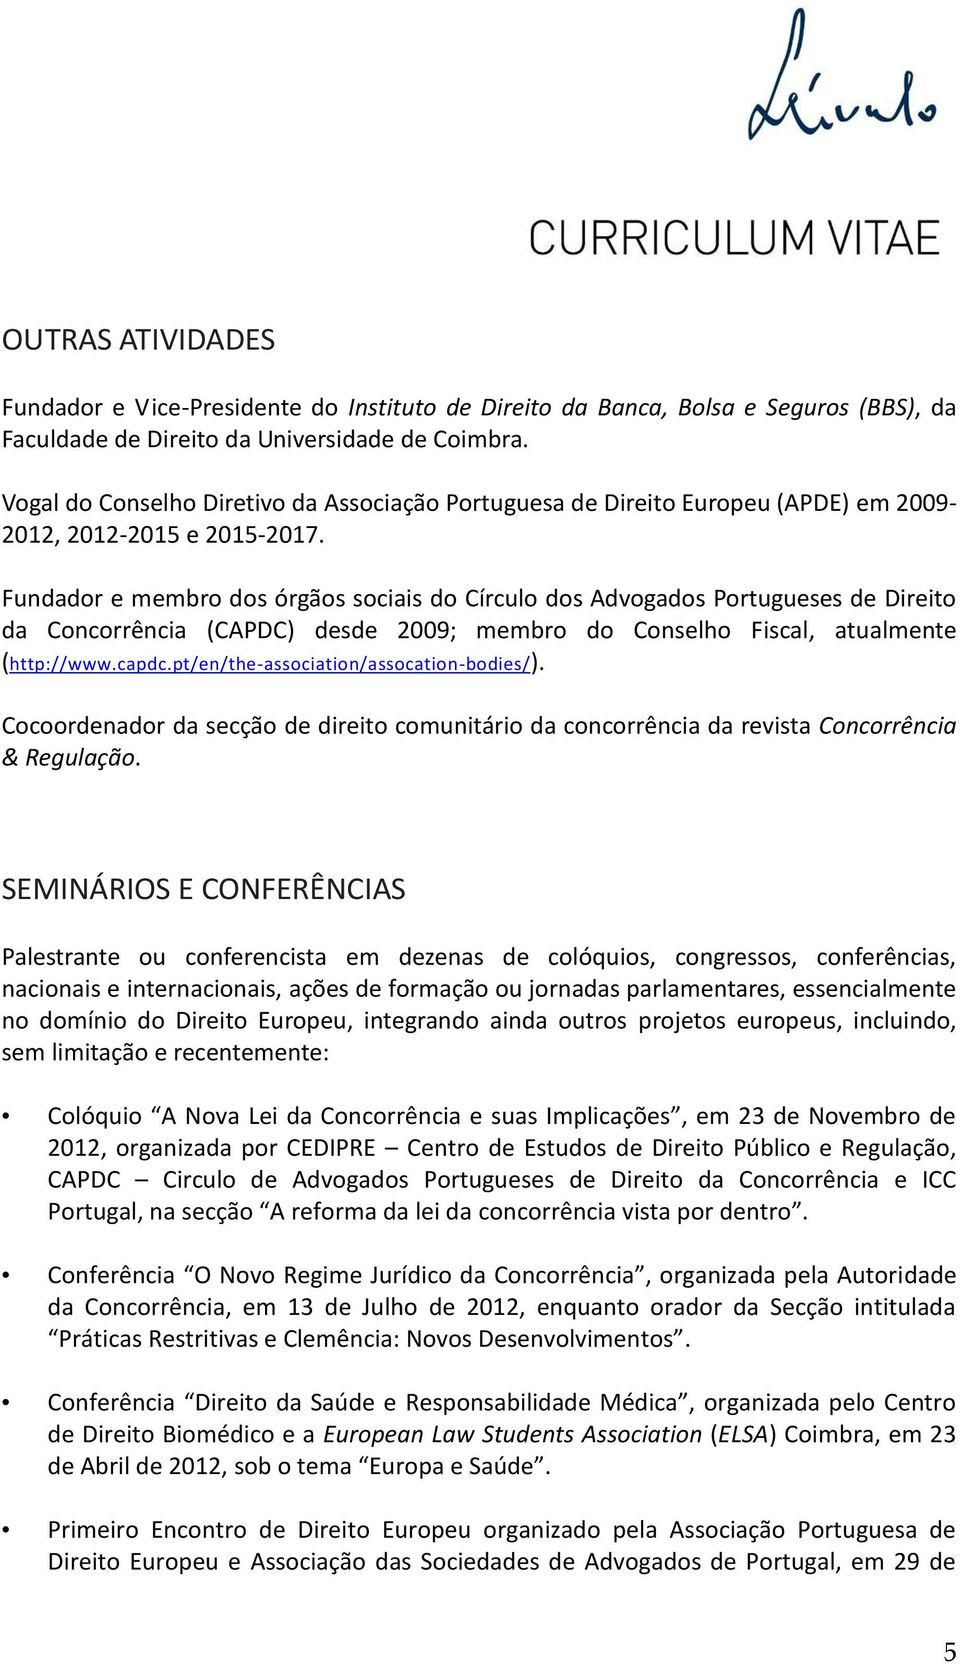 Fundador e membro dos órgãos sociais do Círculo dos Advogados Portugueses de Direito da Concorrência (CAPDC) desde 2009; membro do Conselho Fiscal, atualmente (http://www.capdc.